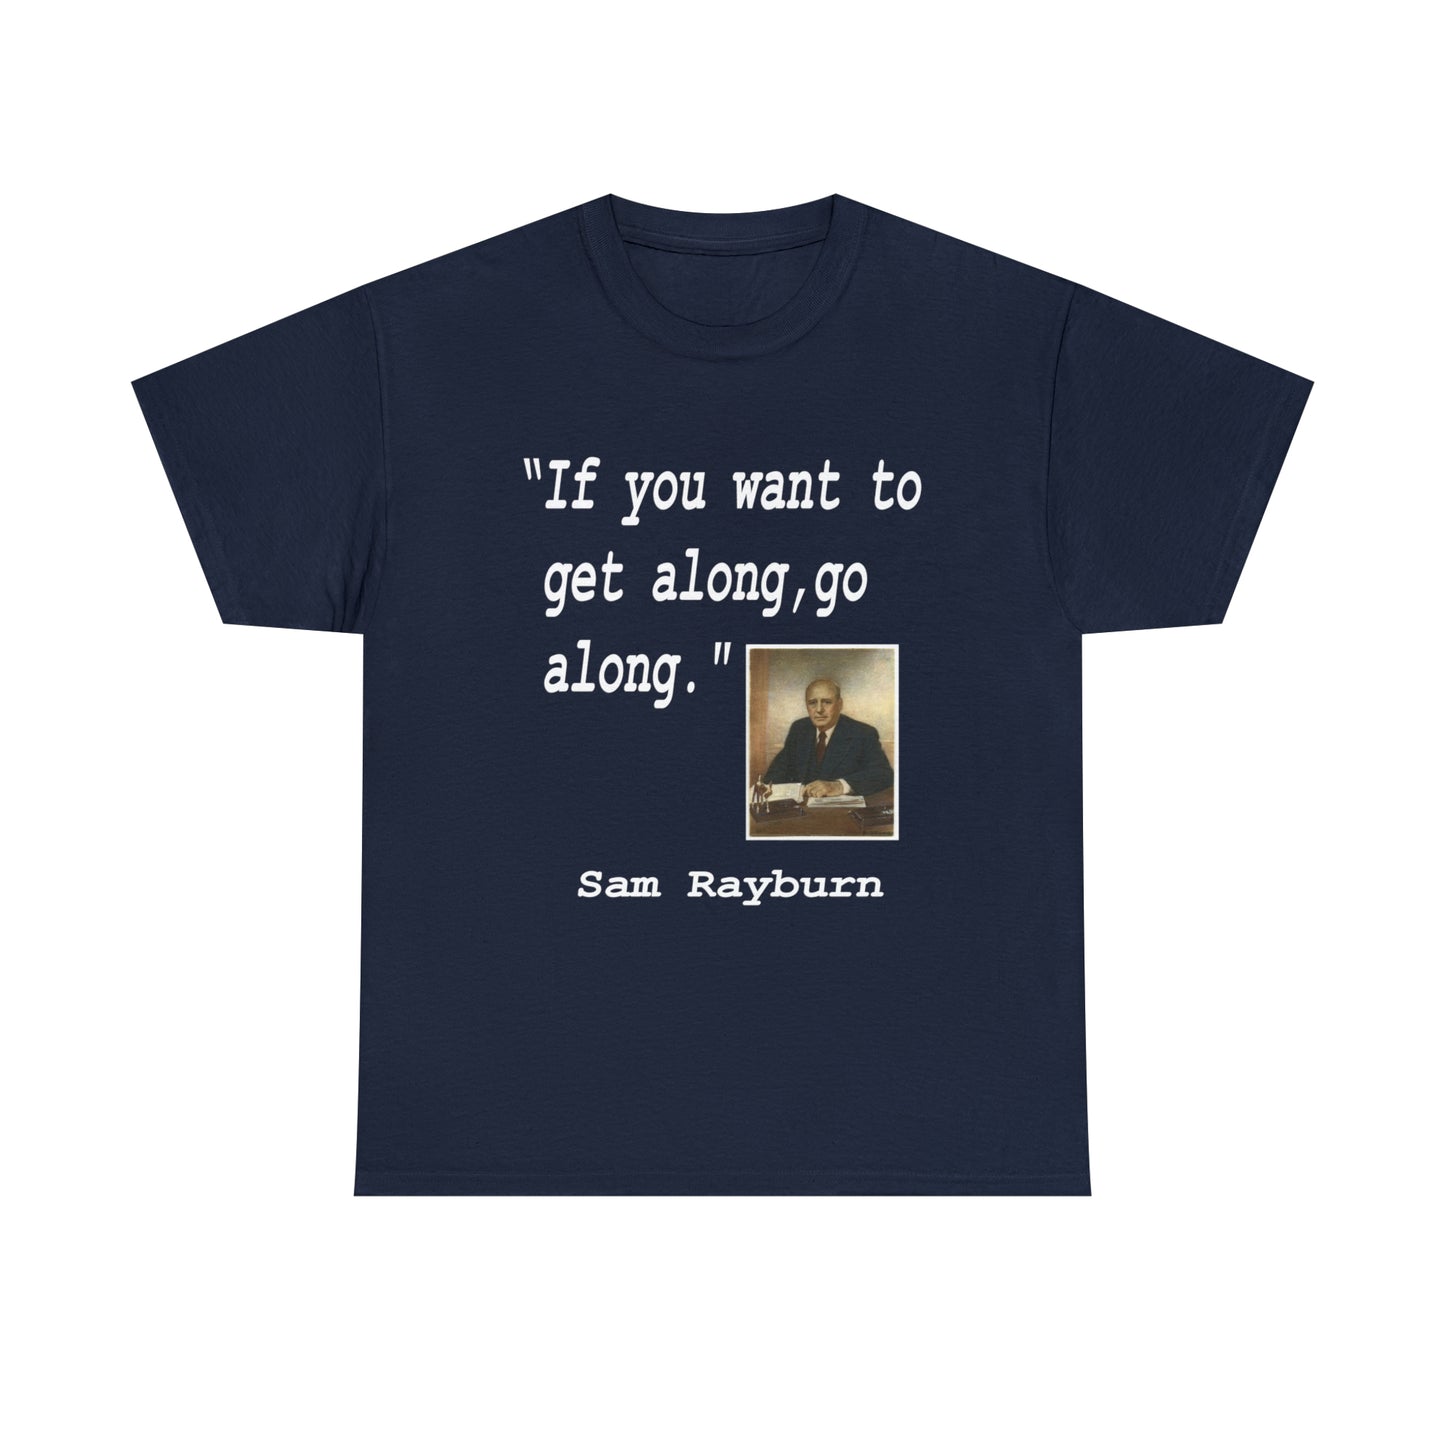 Sam Rayburn - Hurts Shirts Collection